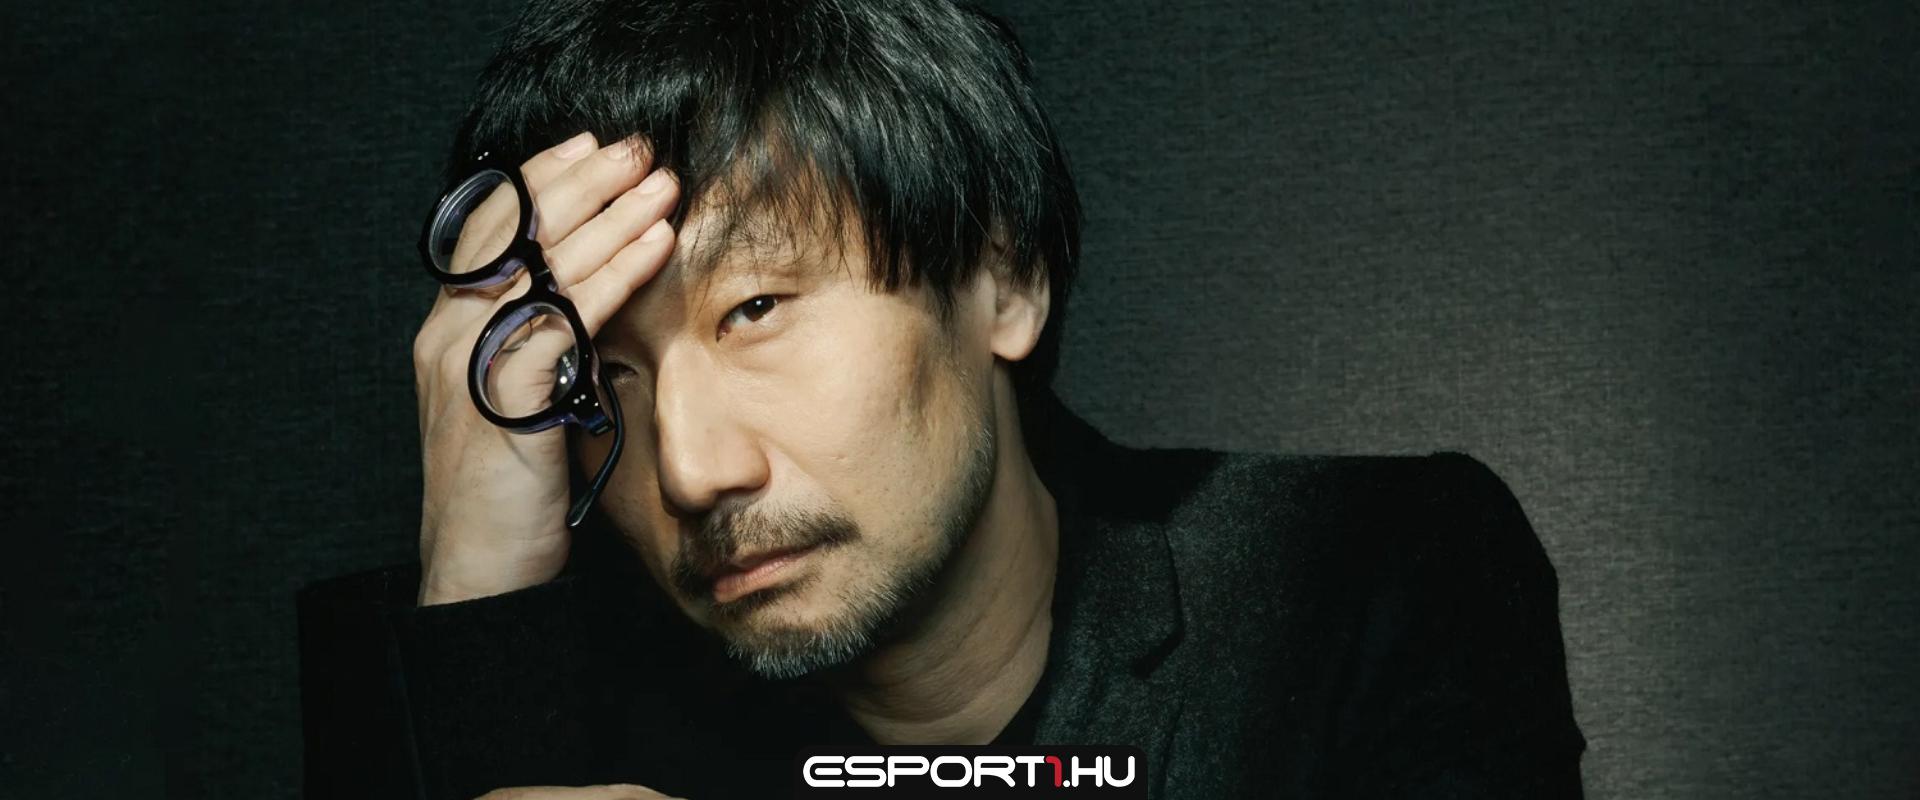 2 percnyi gameplay videó szivárgott ki Kojima új horrorjátékából